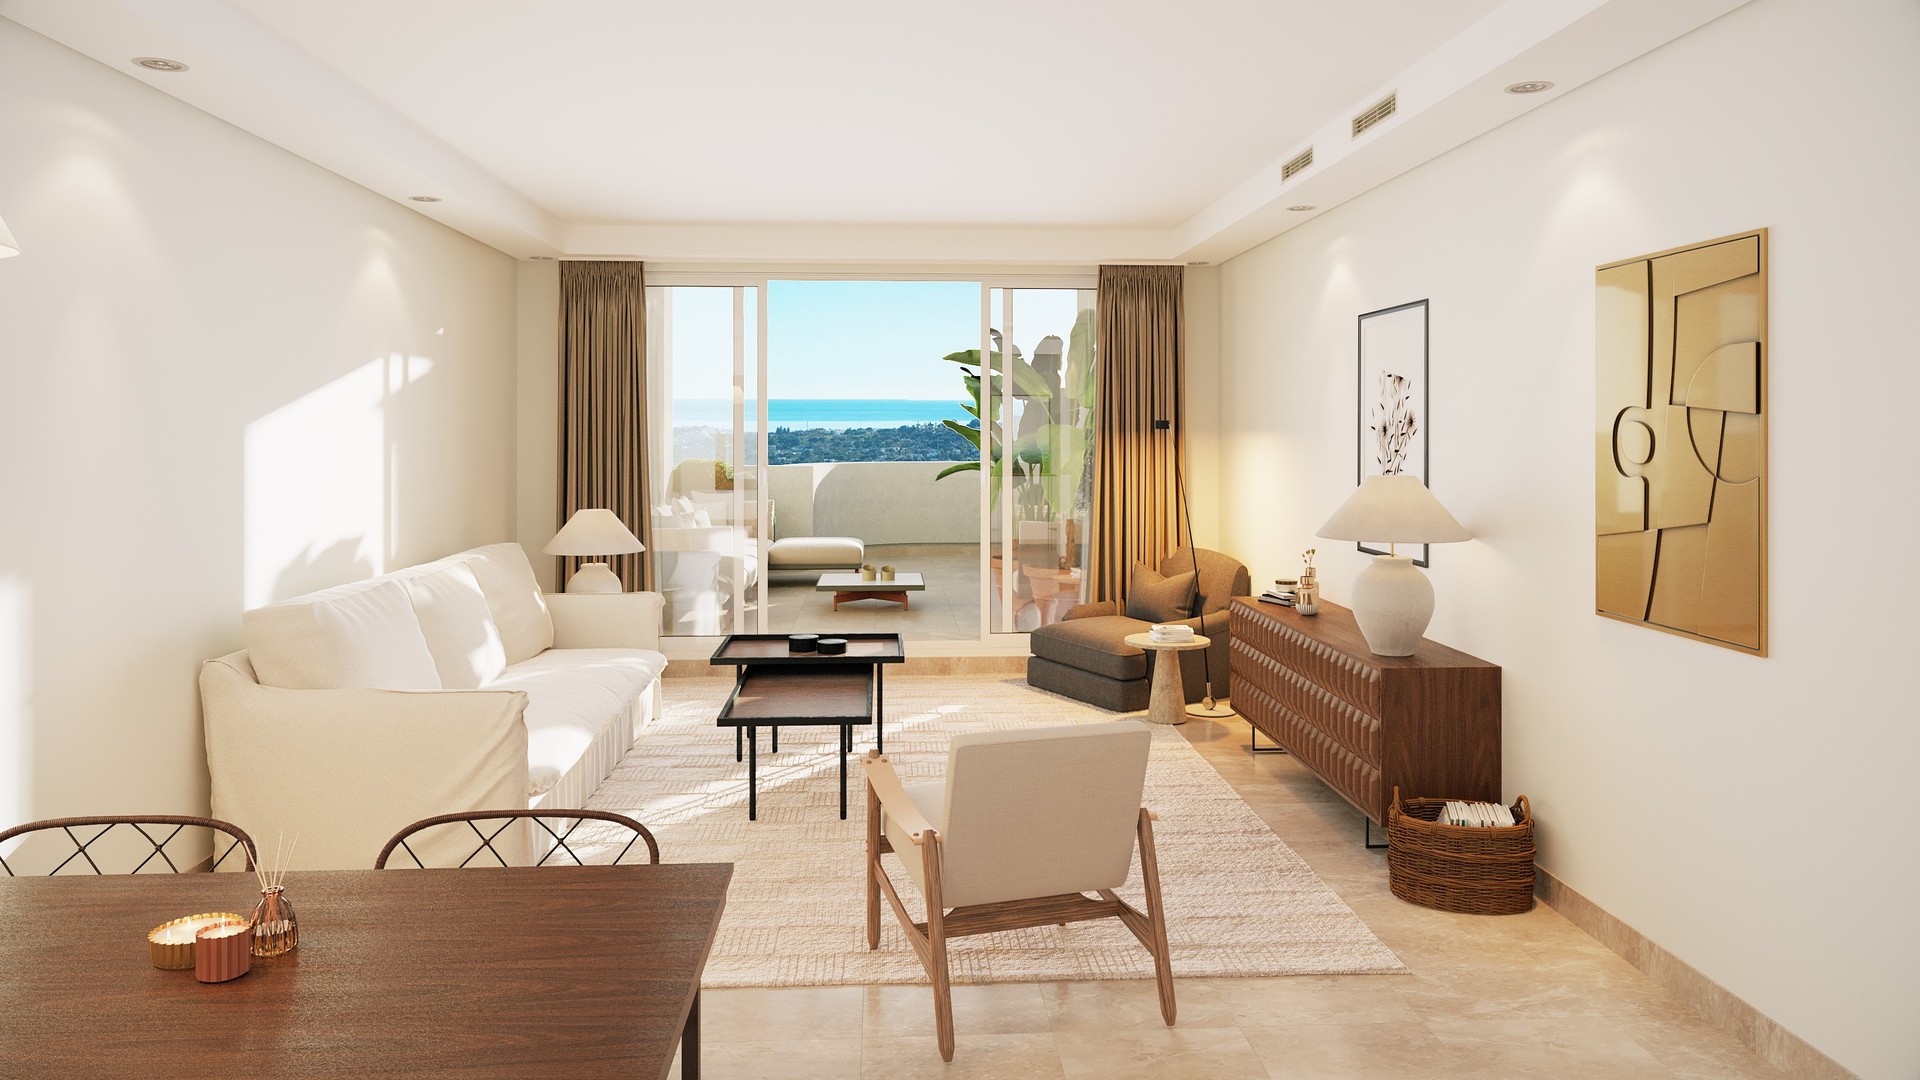 Aloha Golf: Moderno apartamento de 2 habitaciones en urbanización recién desarrollada